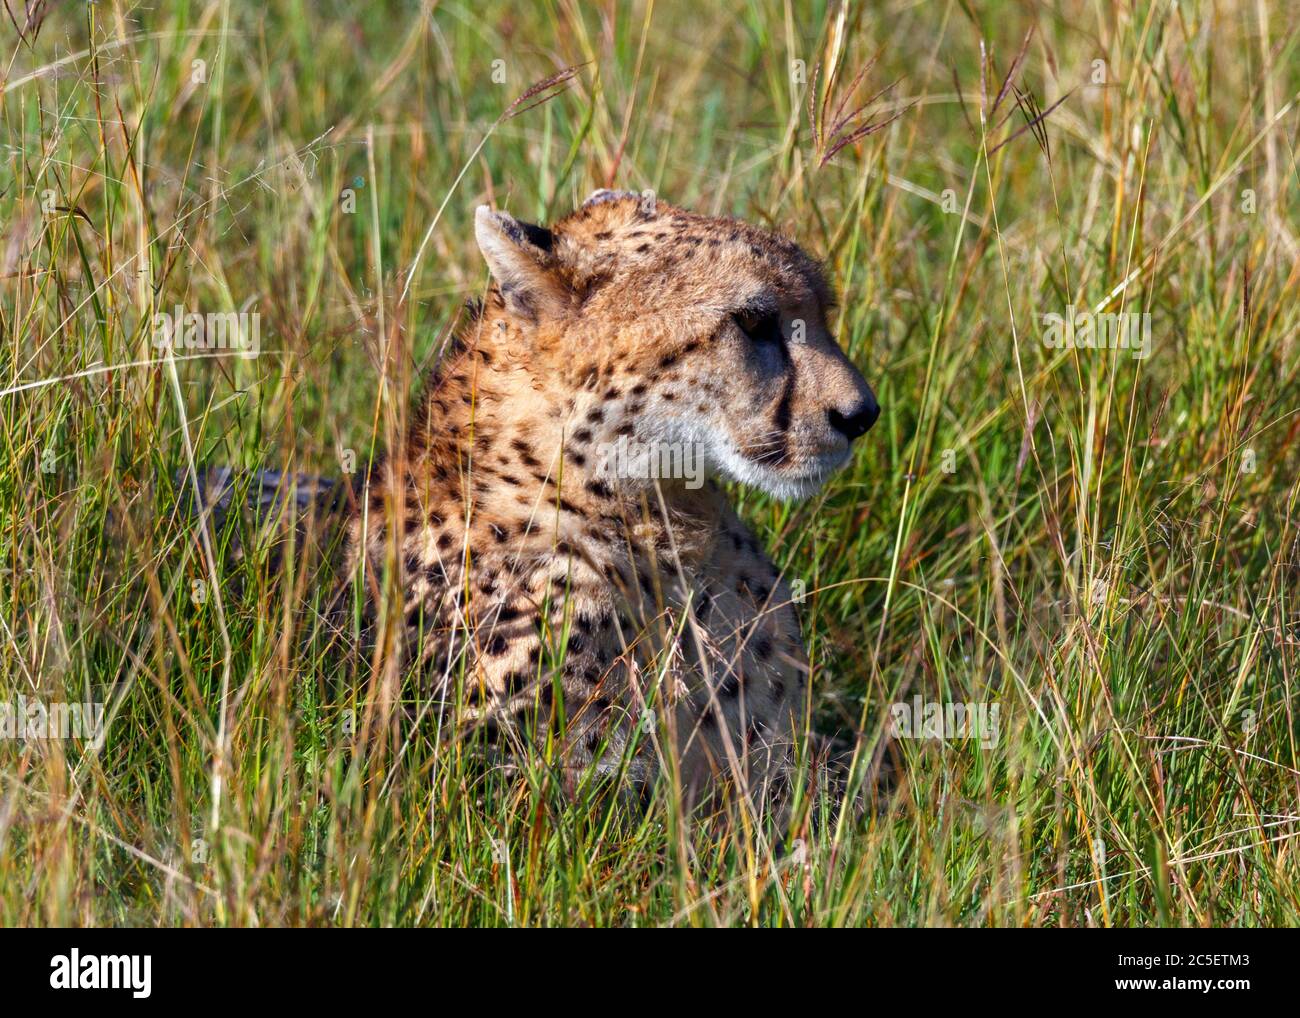 Cheetah (Acinonyx jubatus), située dans la pelouse, réserve nationale de Masai Mara, Kenya, Afrique Banque D'Images